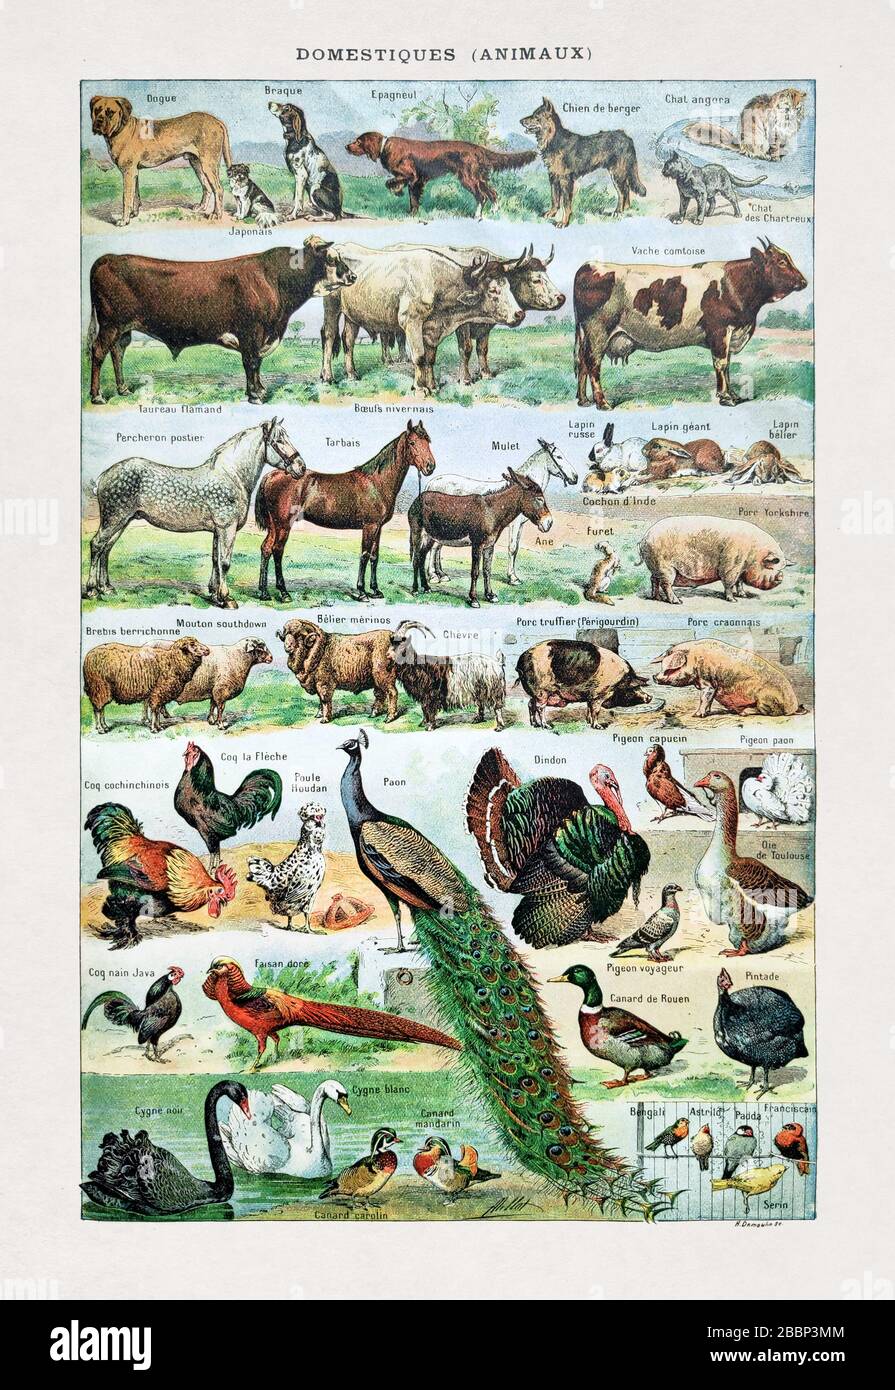 Ancienne illustration sur les animaux domestiques de Desmoulin imprimée à la fin du XIXe siècle. Banque D'Images